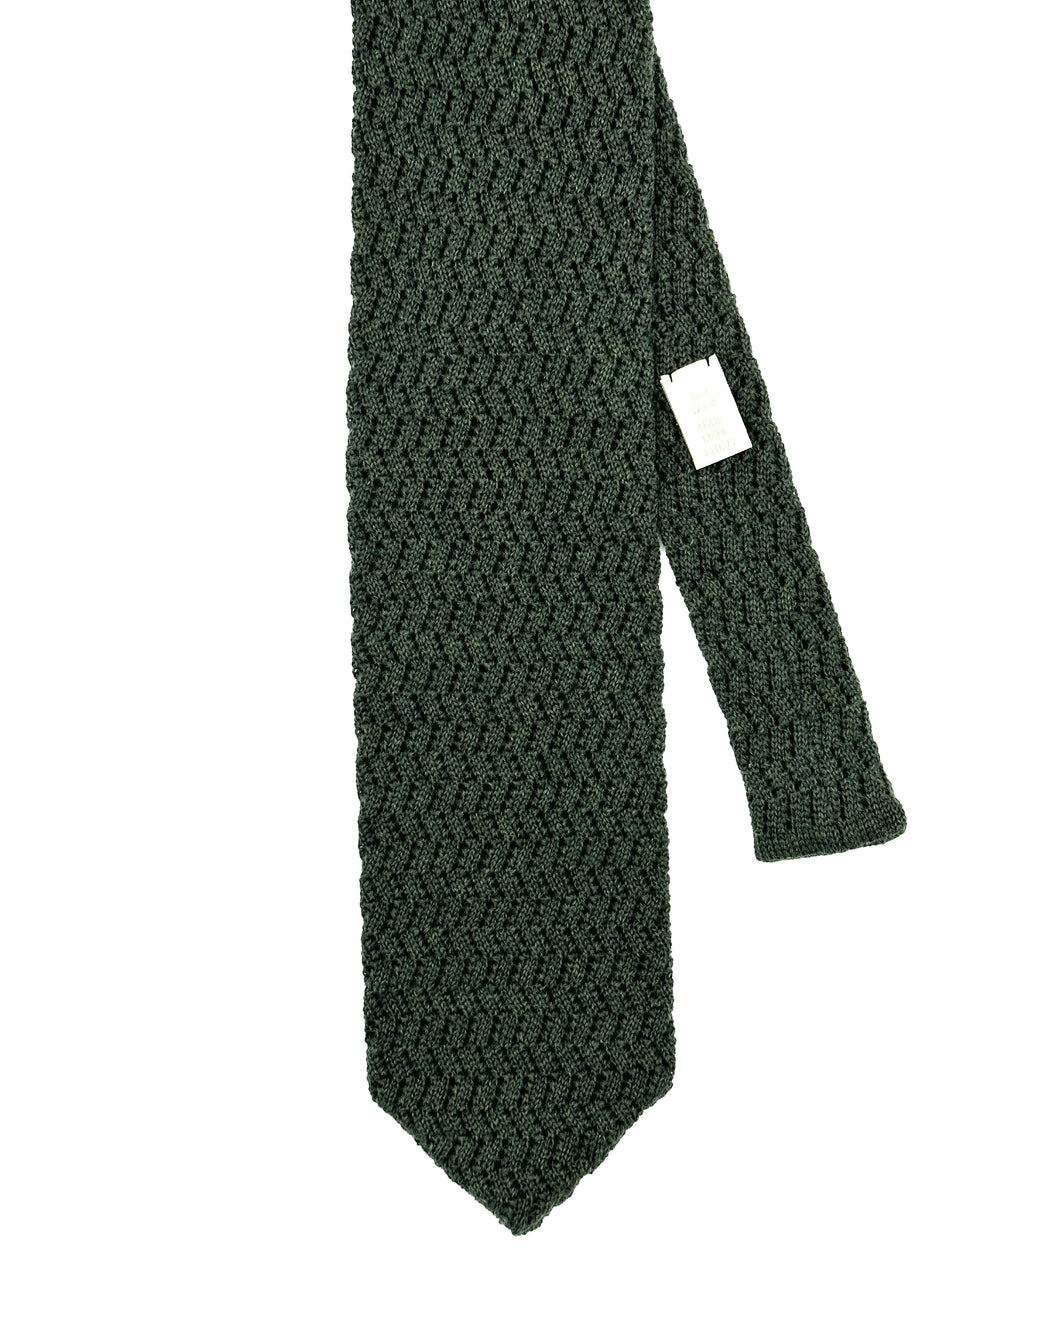 Cravate tricot laine zig zag vert foncé